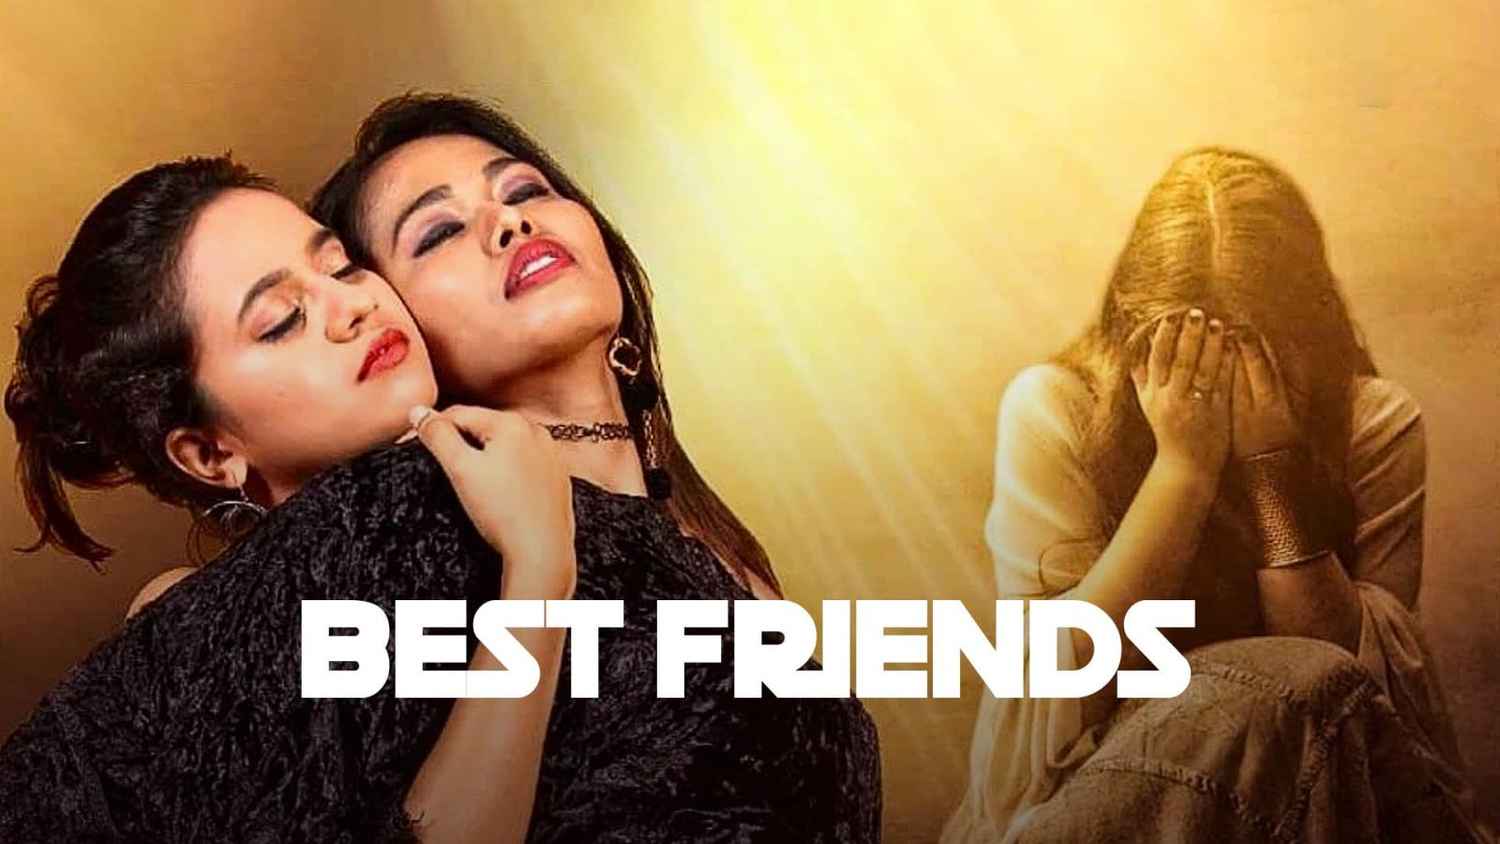 Best Friends Movie (2019) Release Date, Cast, Trailer, Songs